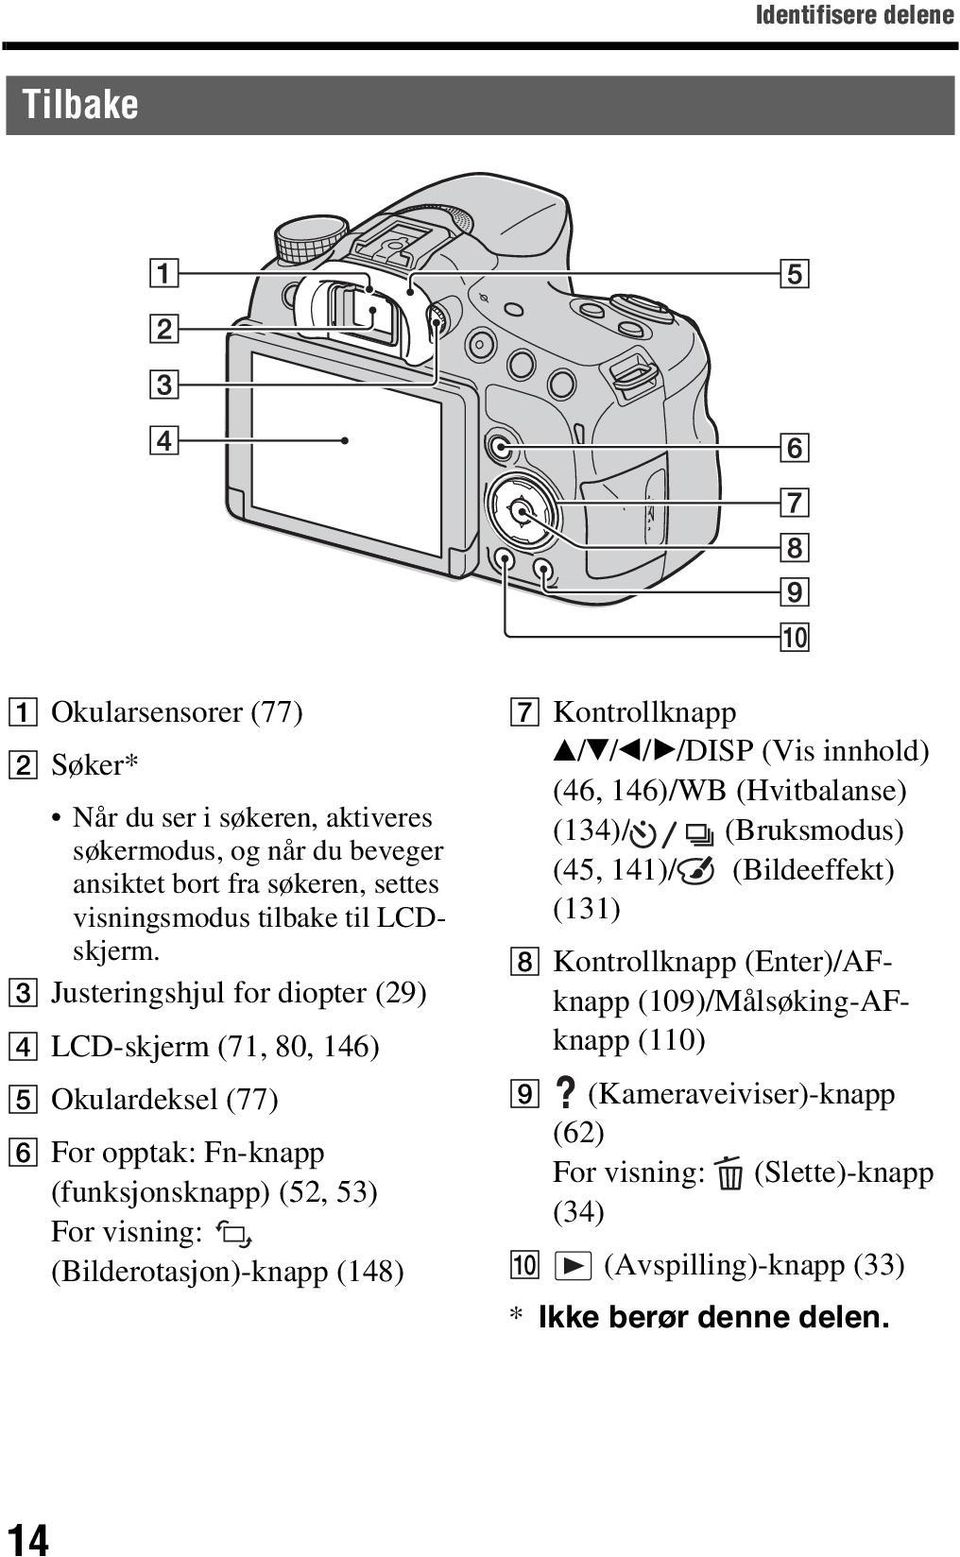 C Justeringshjul for diopter (29) D LCD-skjerm (71, 80, 146) E Okulardeksel (77) F For opptak: Fn-knapp (funksjonsknapp) (52, 53) For visning: (Bilderotasjon)-knapp